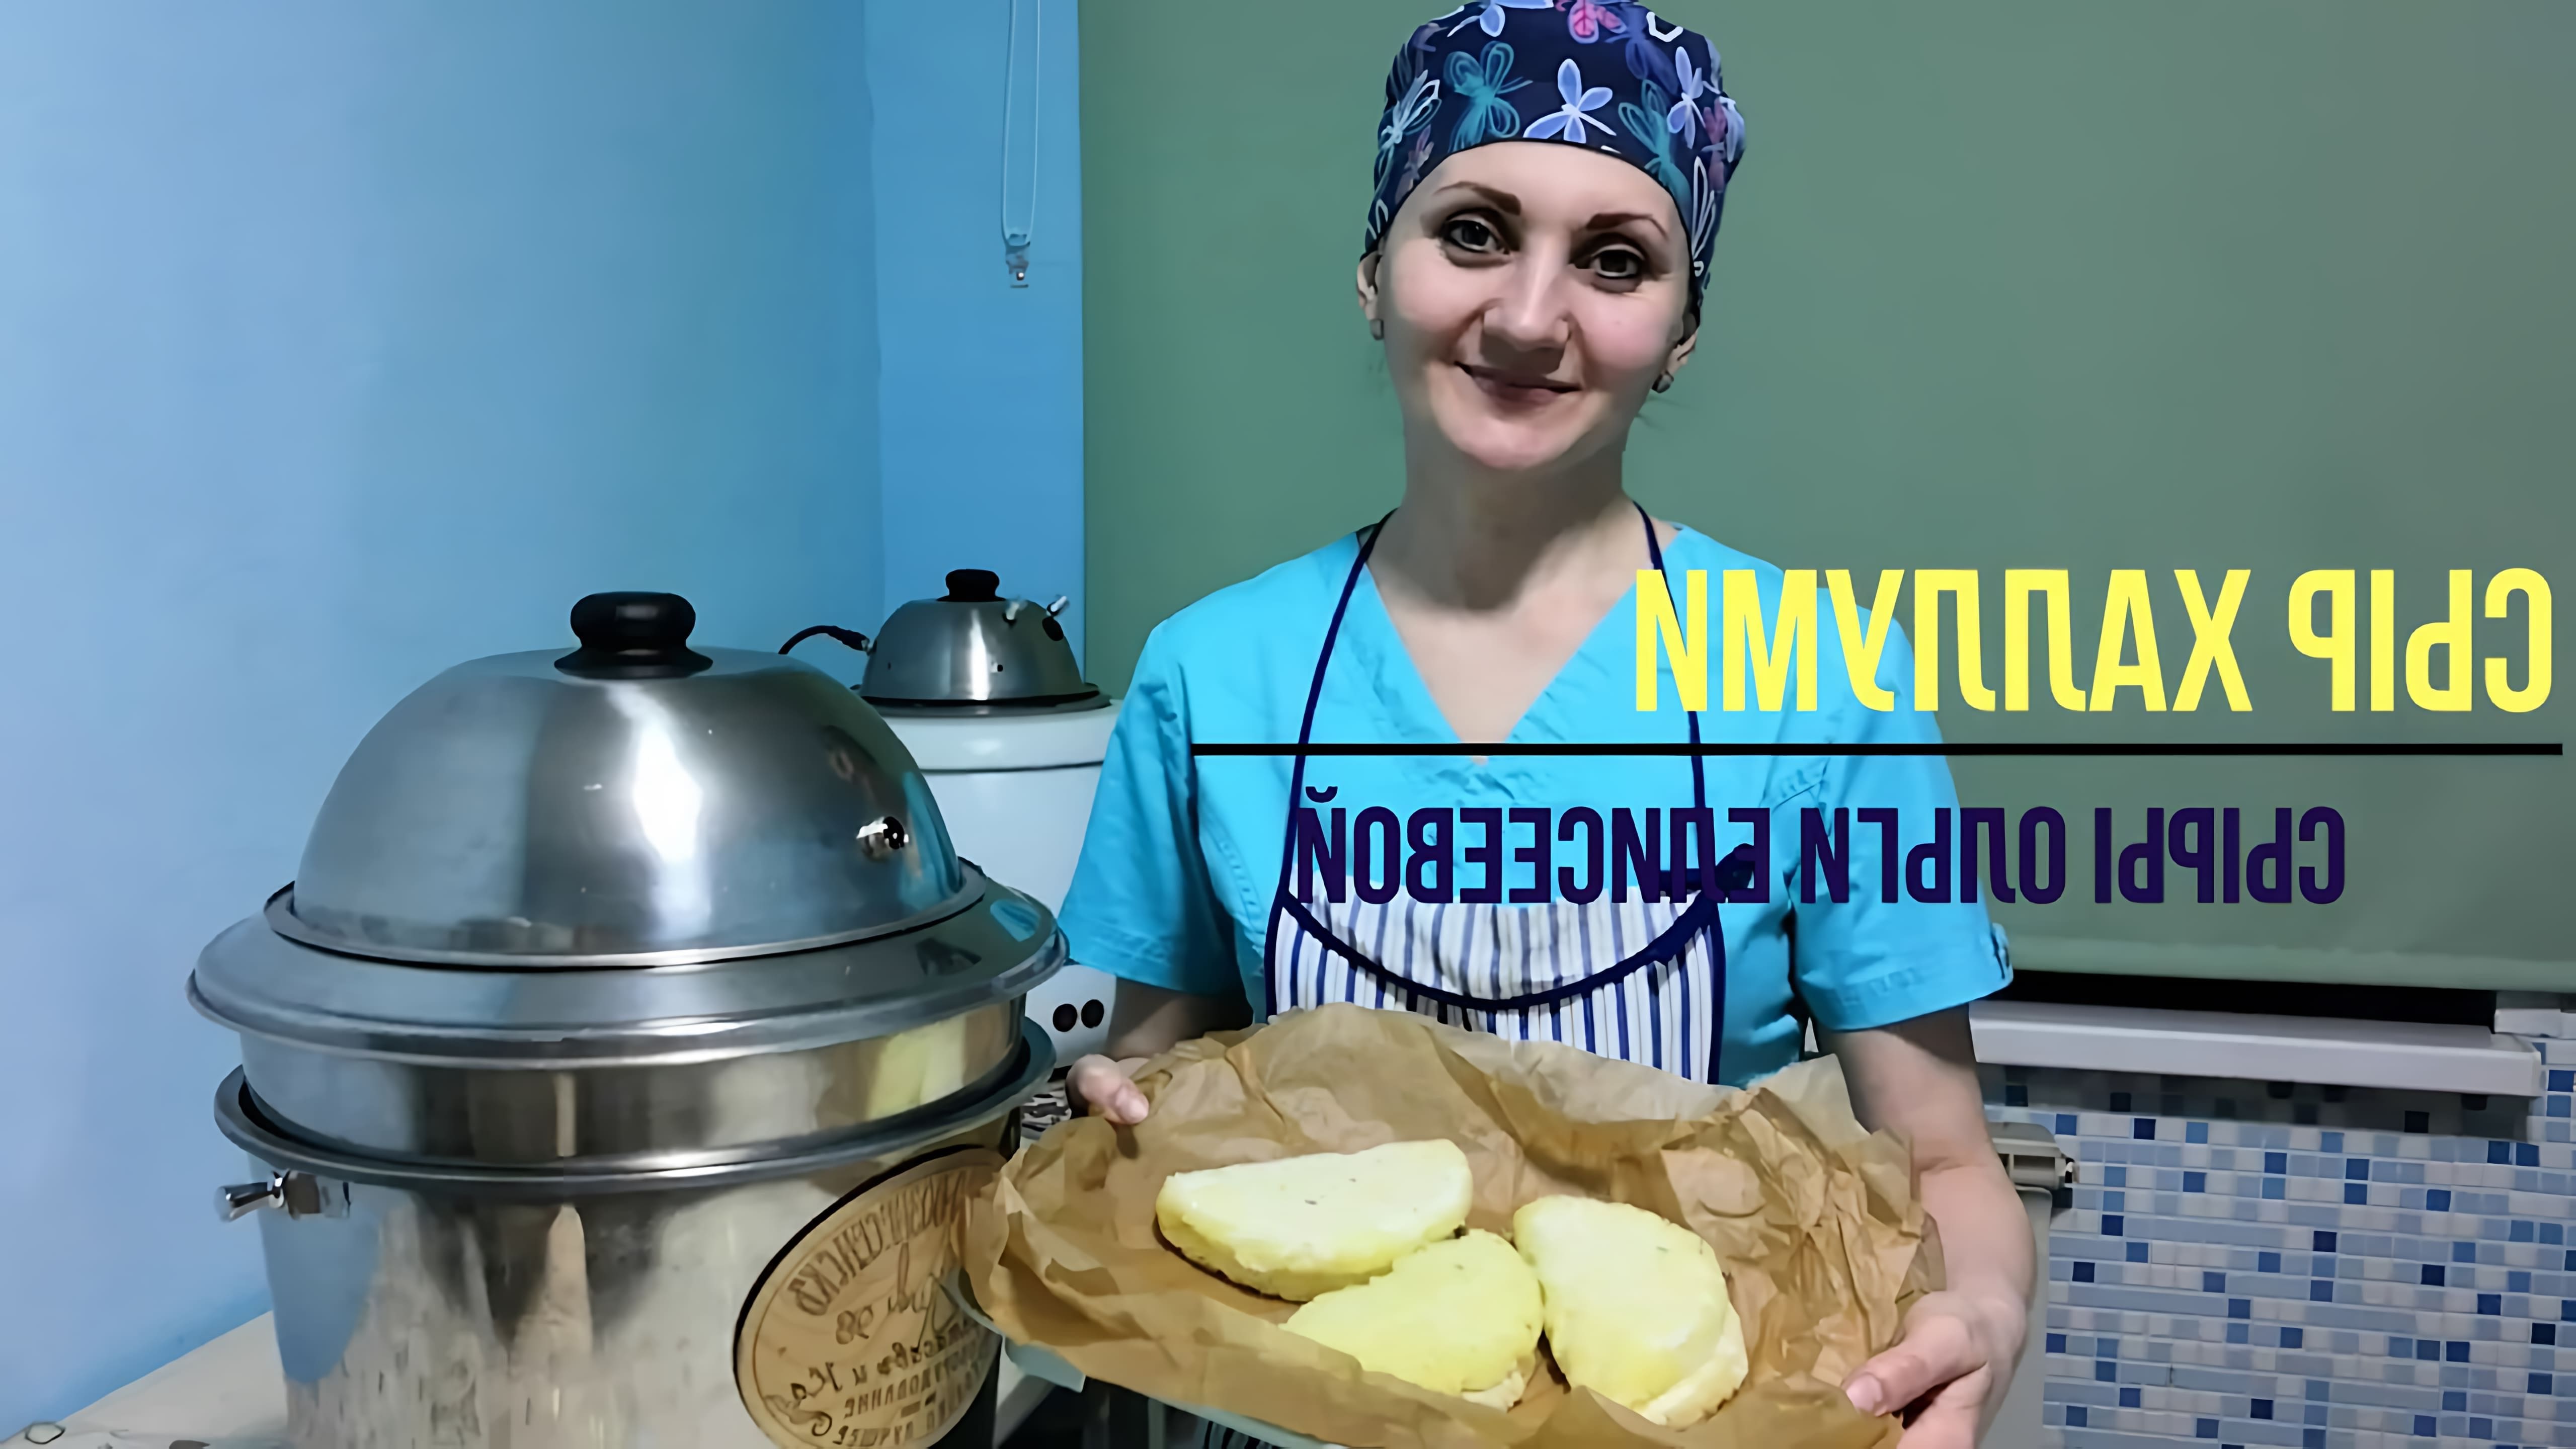 В этом видео Ольга Елисеева показывает, как приготовить сыр халлуми из коровьего молока